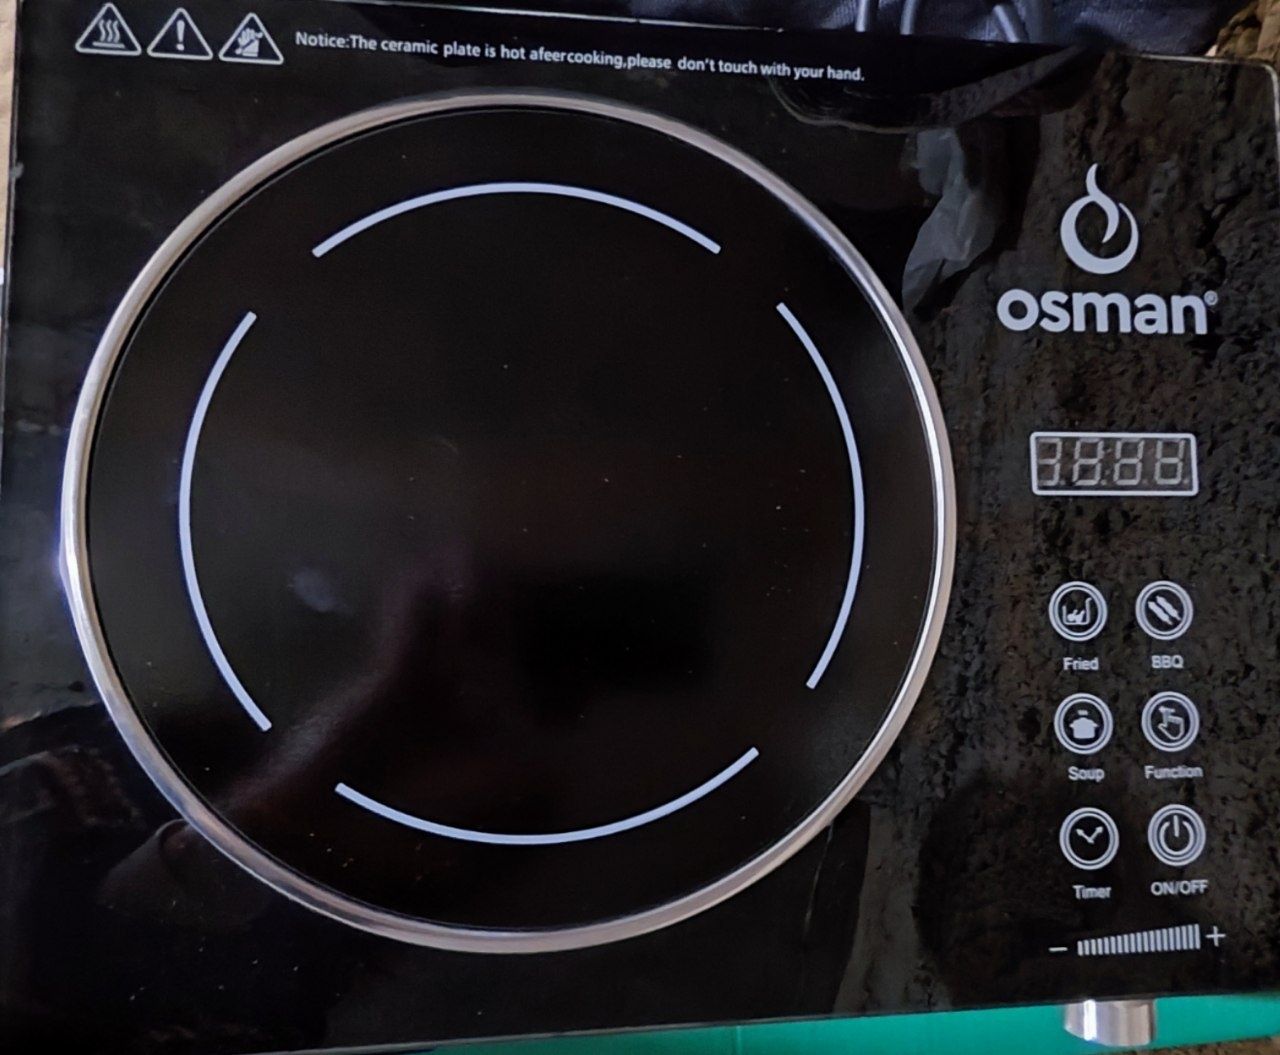 Компактная и стильная электрическая плита Osman позволит готовить в лю